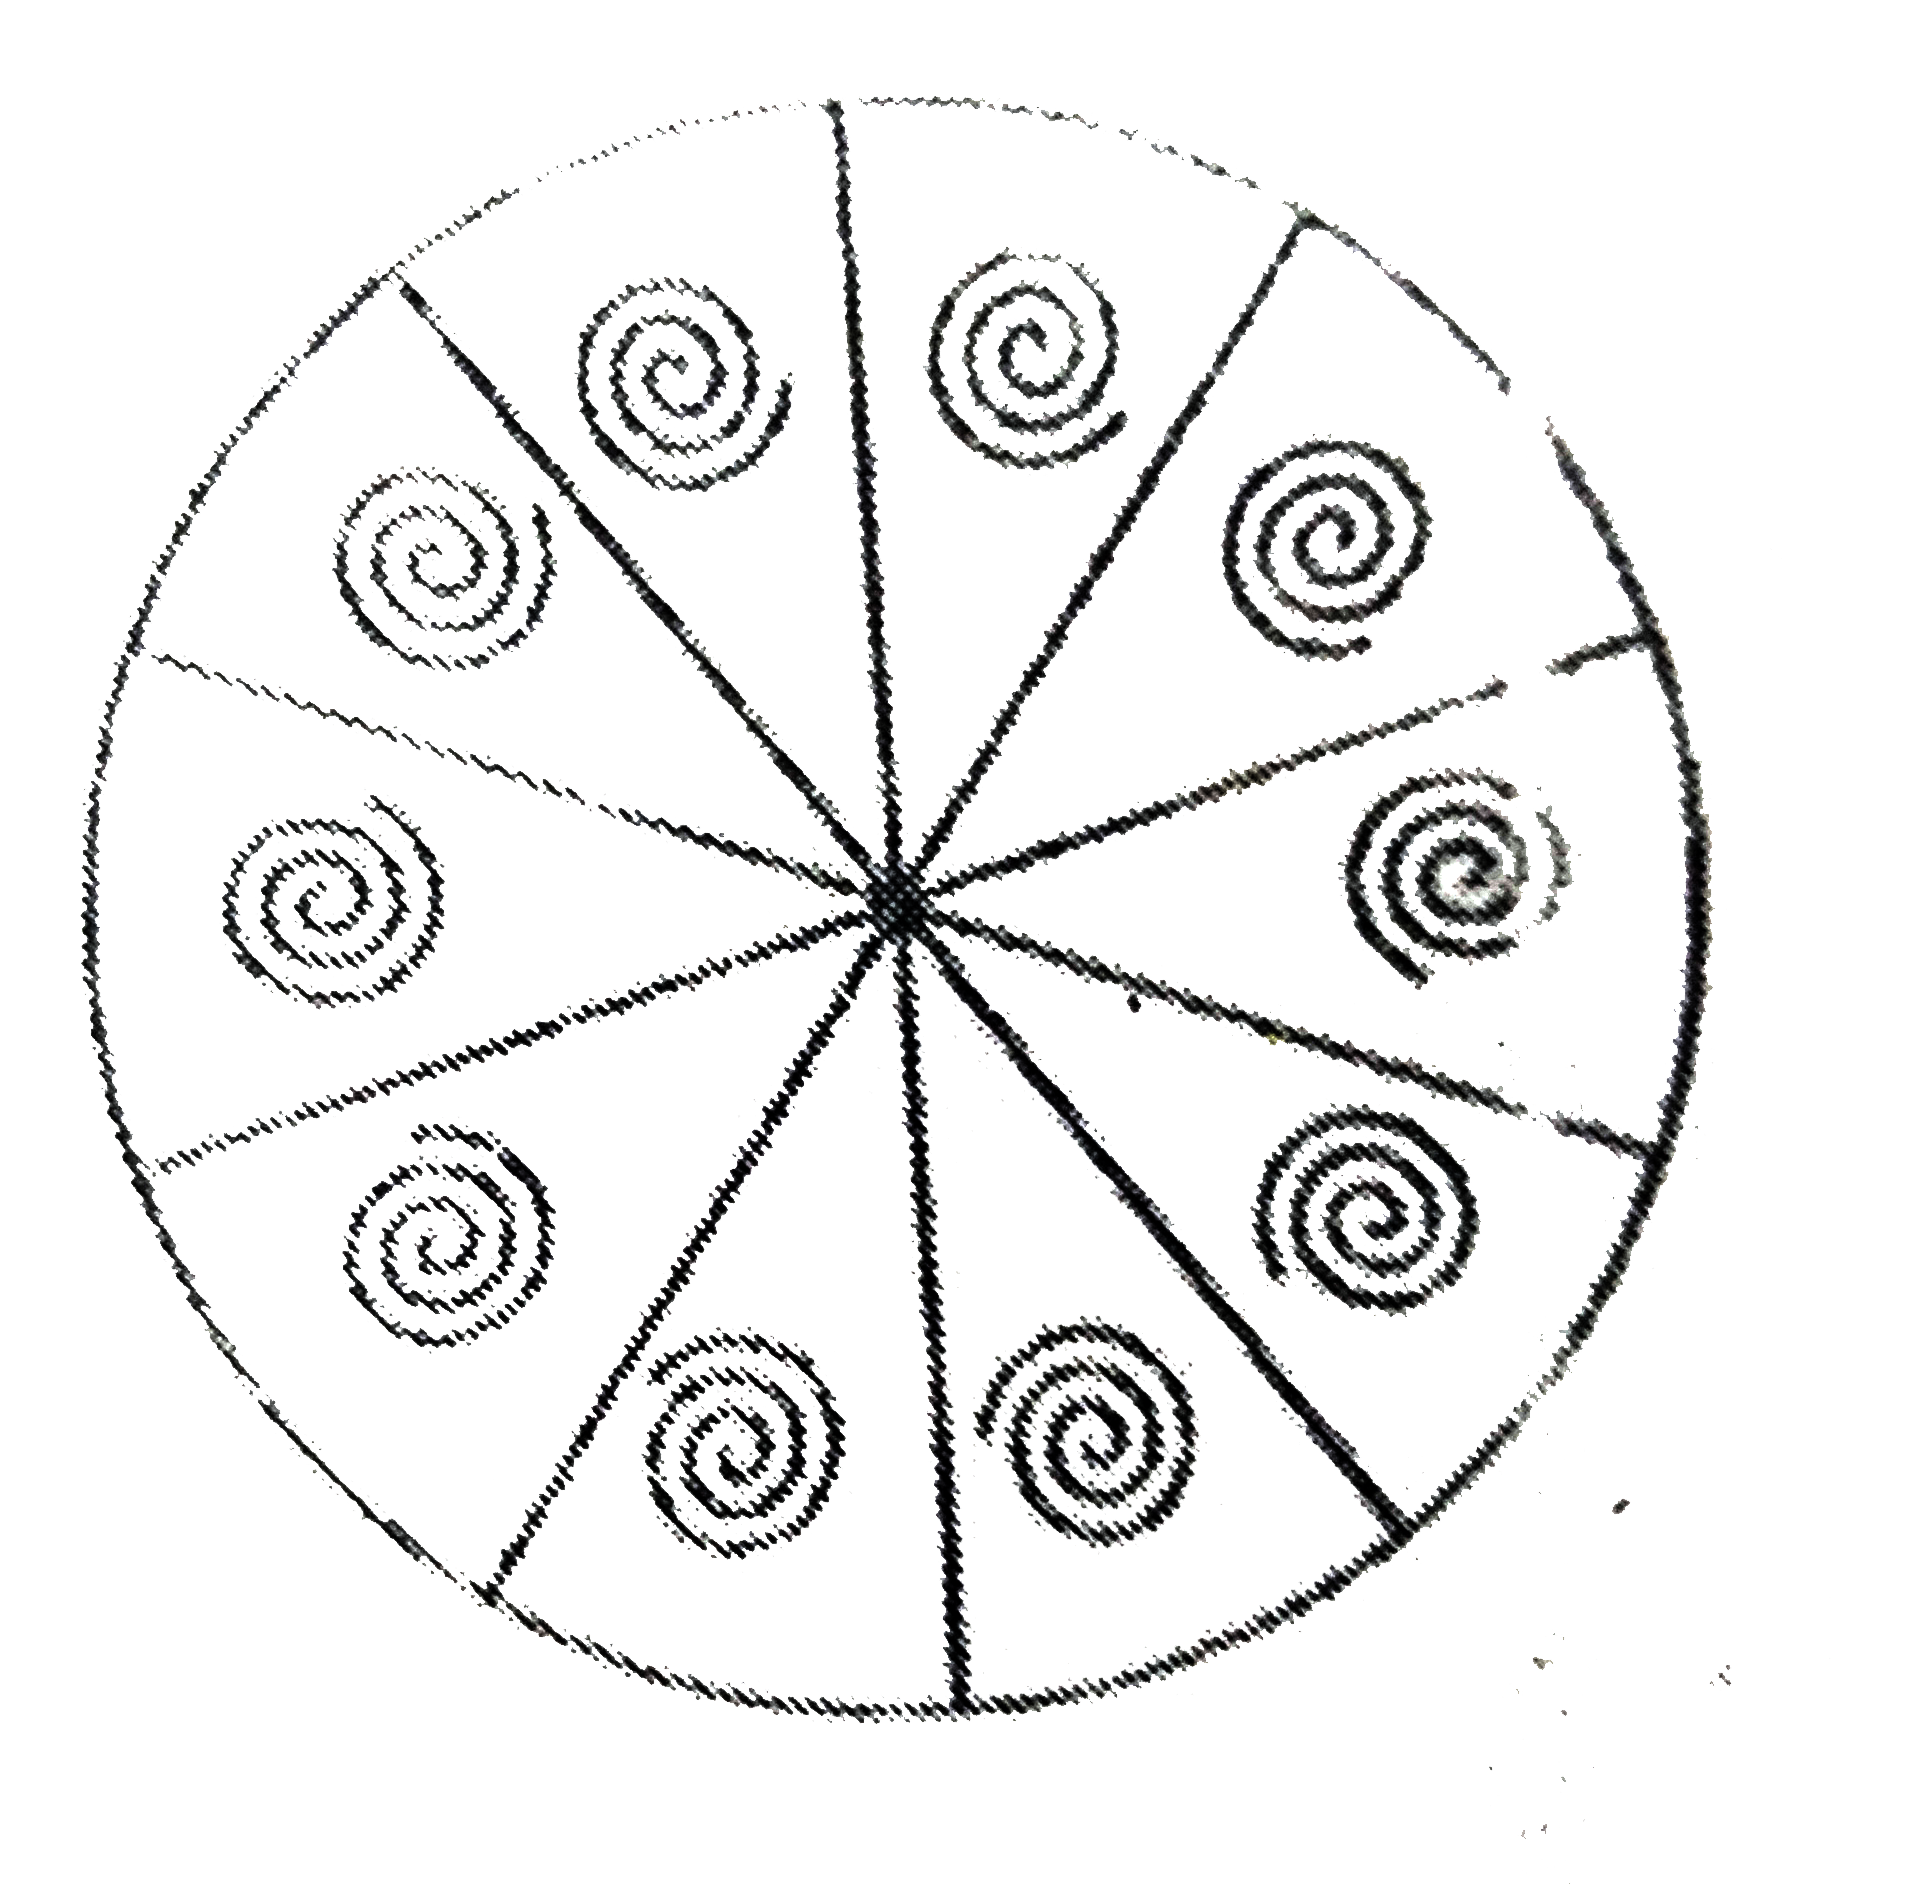 एक वृत्ताकार ब्रूच को चाँदी के तार से बनाया जाना है जिसका व्यास 35  मिमी है। तार को वृत्त के 5 व्यासो को बनाने में भी प्रयुक्त किया गया है जो उसे 10 बराबर त्रिज्याखण्डों में विभाजित करता है जैसा की आकृति में दर्शाया गया है। तो ज्ञात कीजिए :      (i) कुल वांछित चाँदी के तार की लम्बाई   (ii) ब्रूच के प्रत्येक तीज्यखण्ड का क्षेत्रफल।